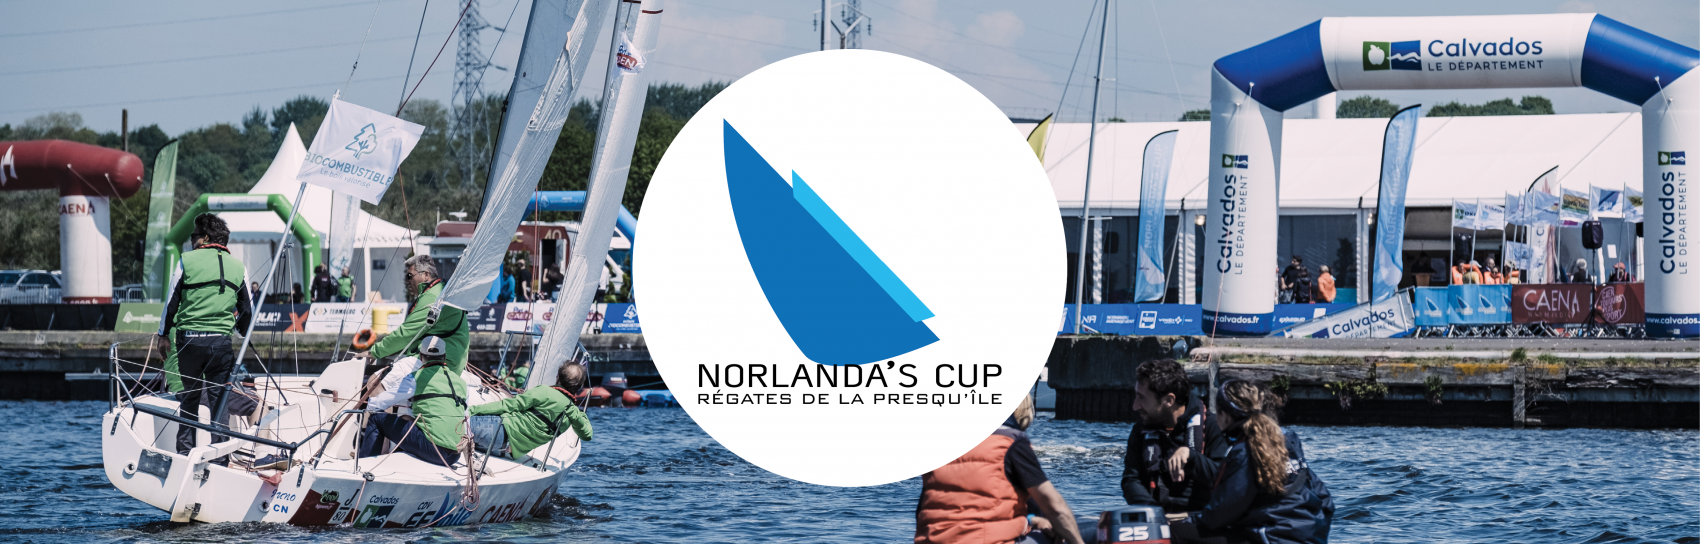 NCUP-bandeau régates Norlanda's Cup Normandie voile Caen